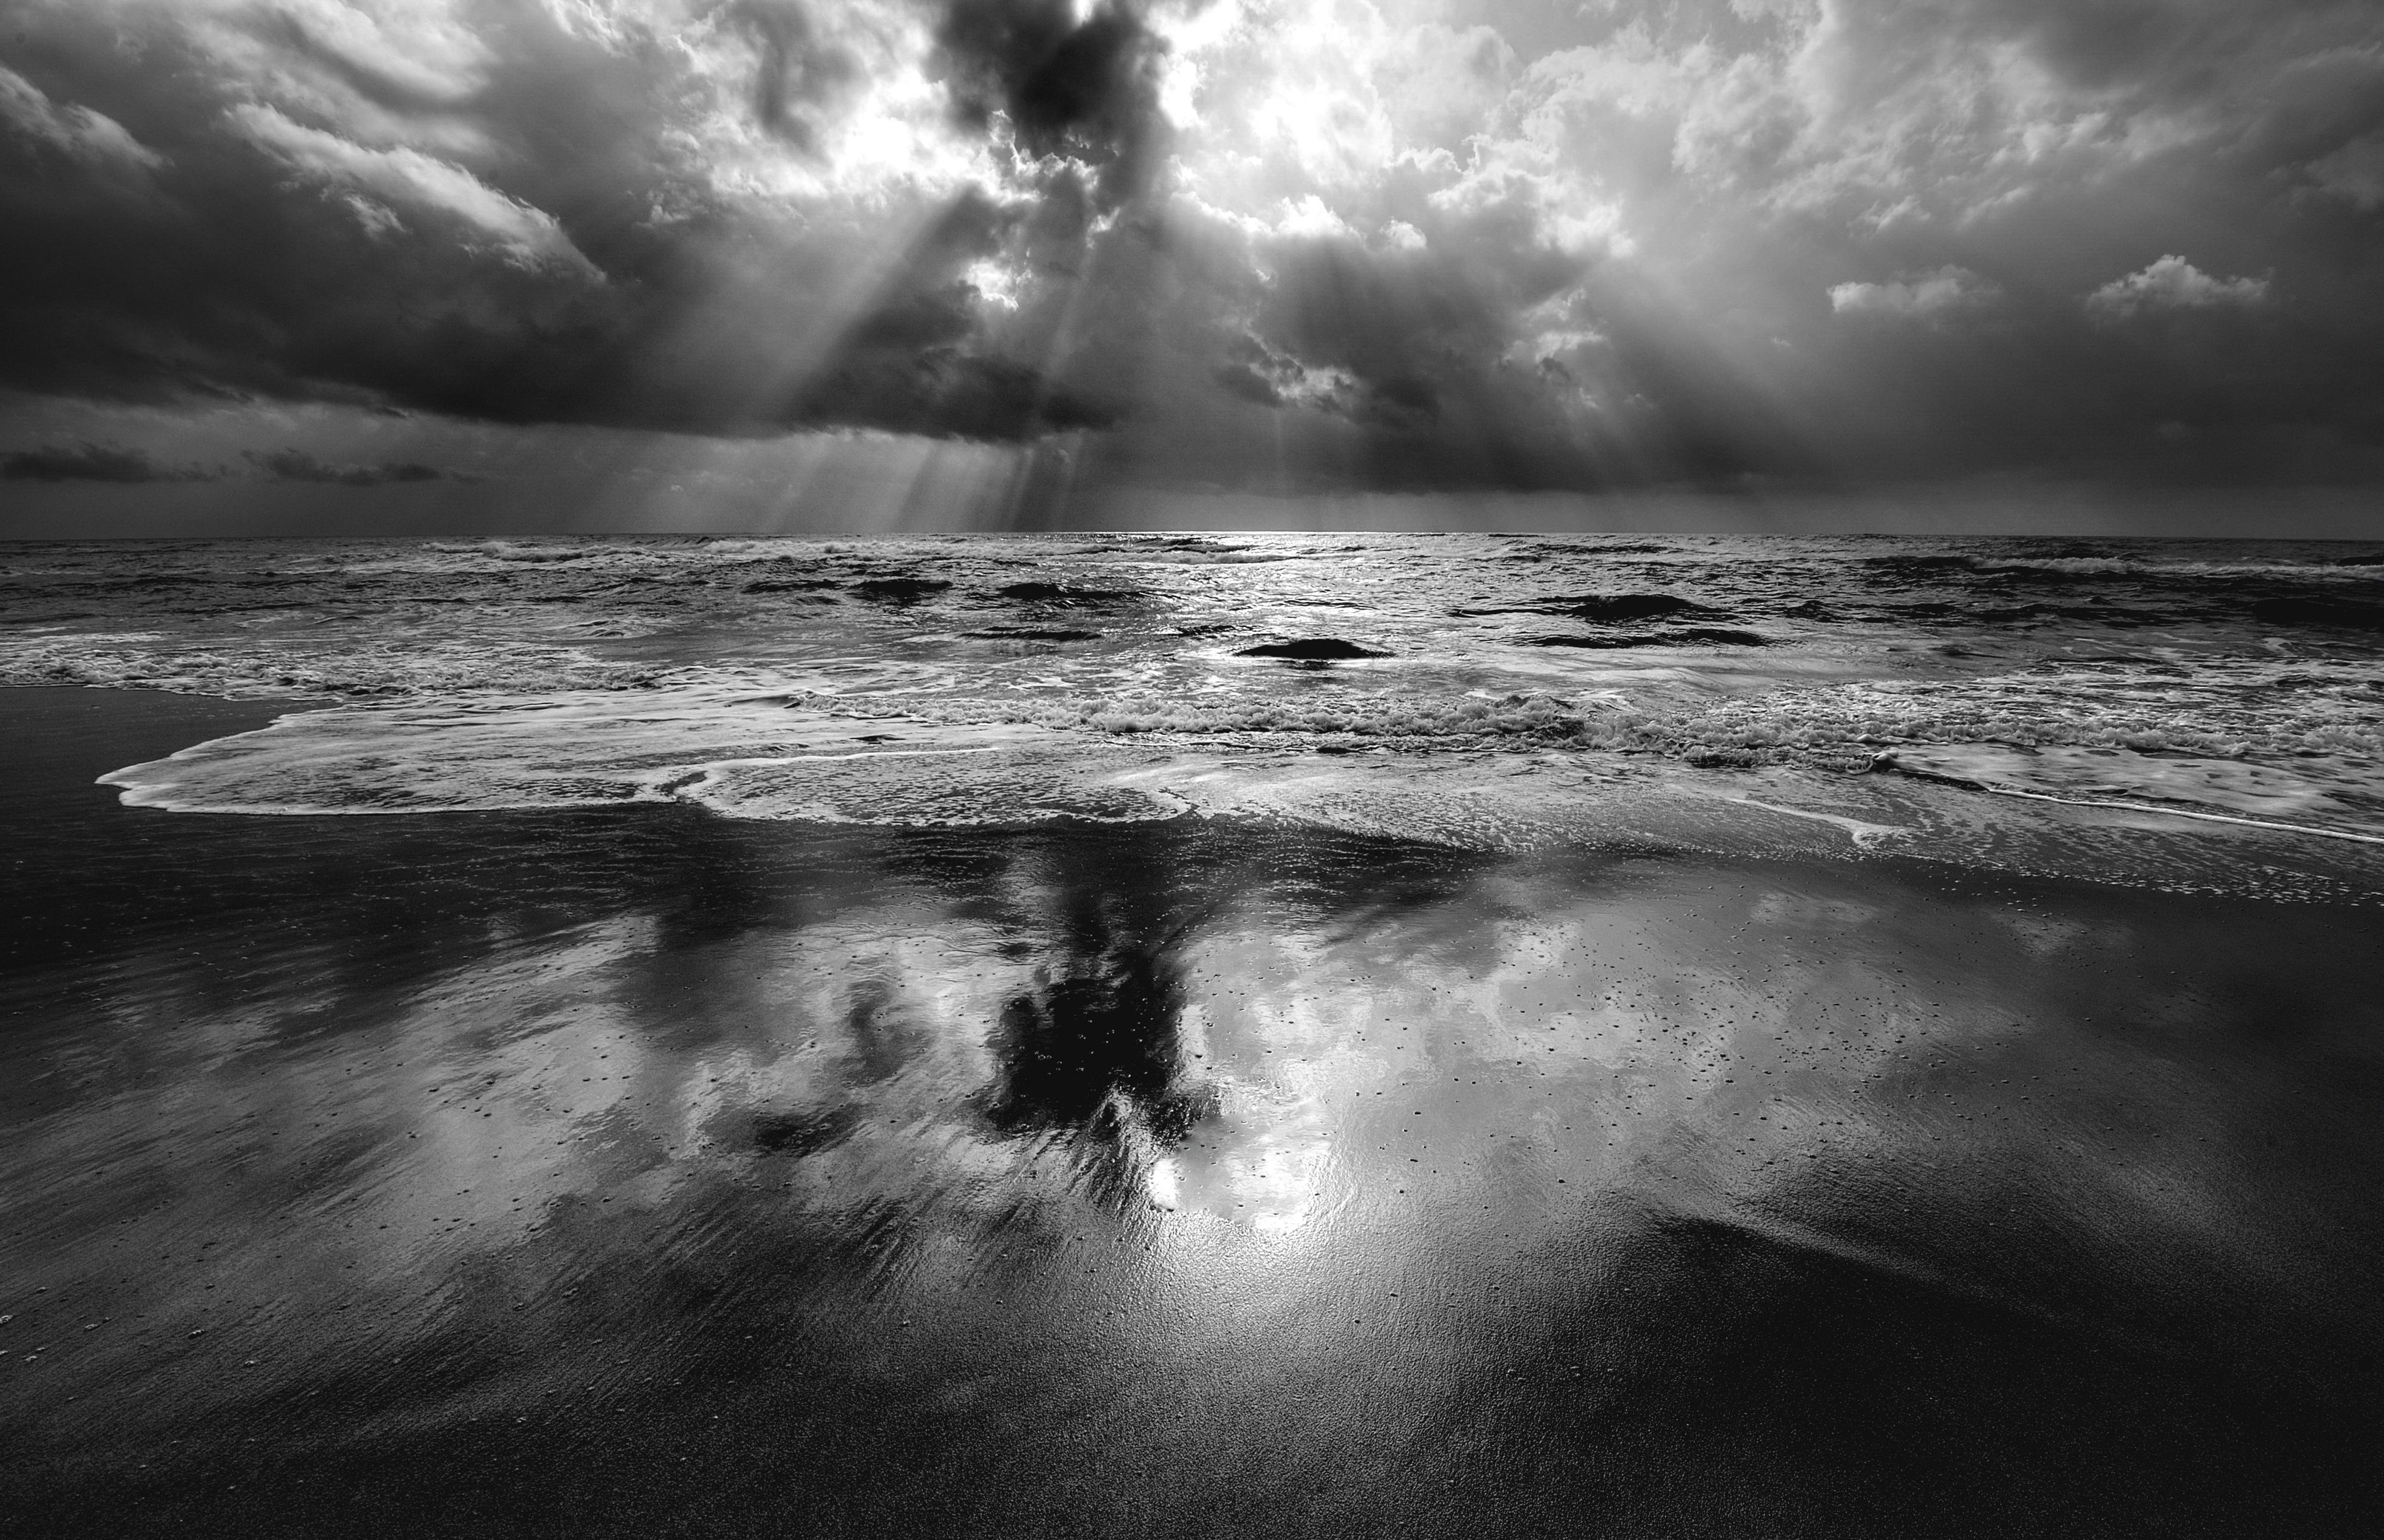 フリー写真素材 自然 風景 海 ビーチ 砂浜 日光 太陽光線 モノクロ写真 画像素材なら 無料 フリー写真素材のフリーフォト